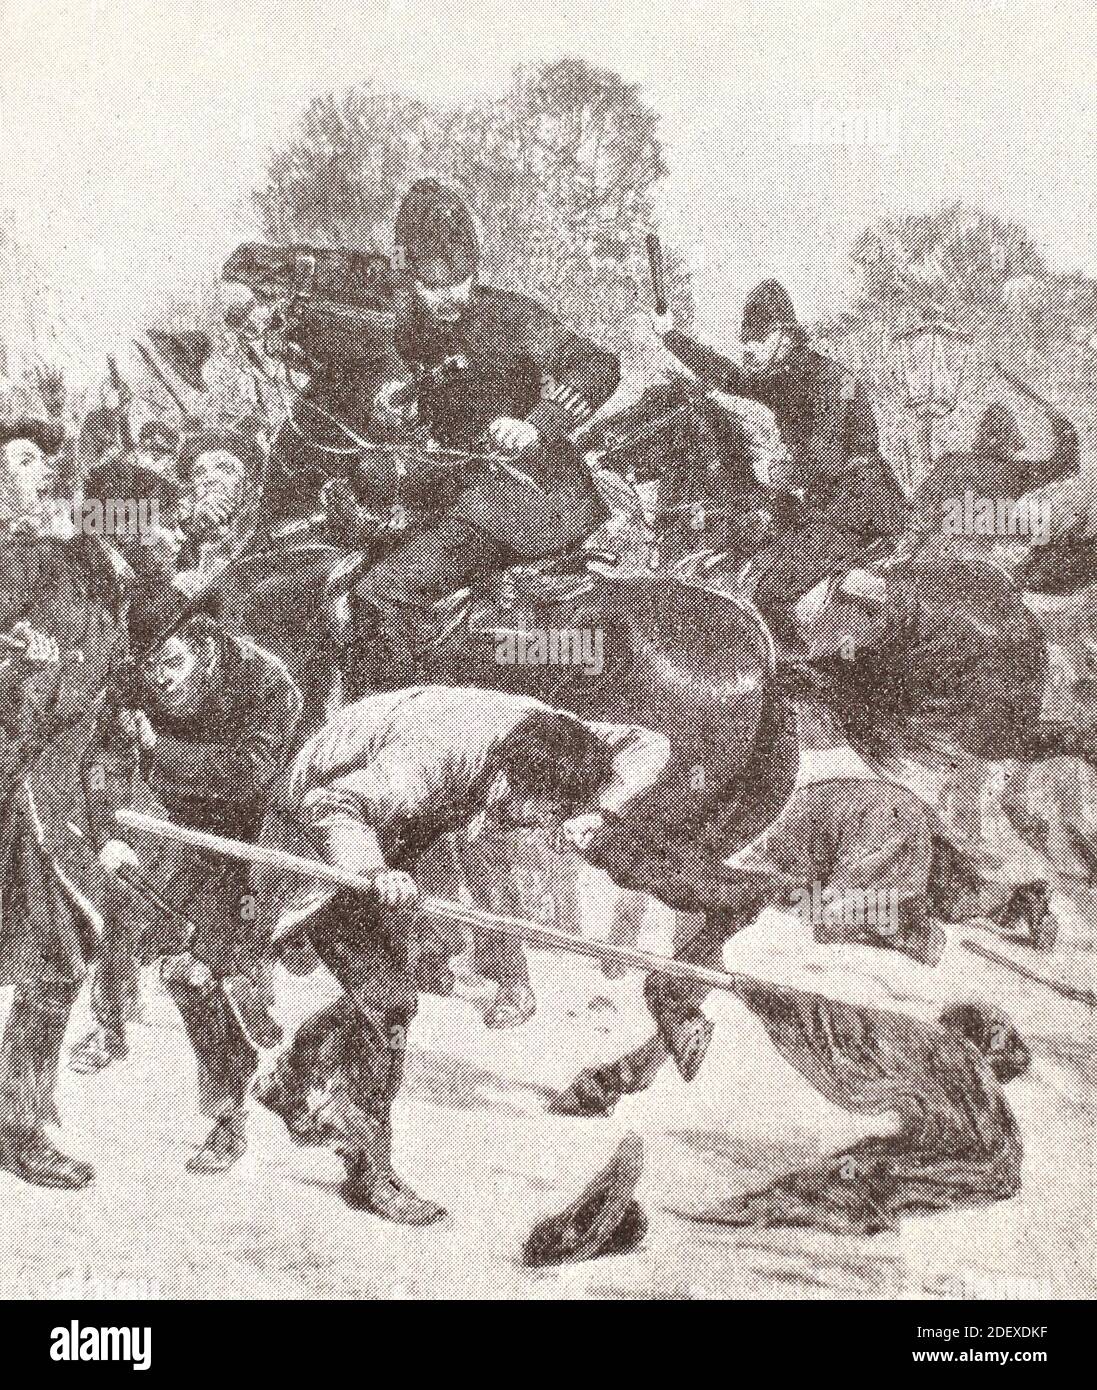 Répression policière contre un rassemblement de chômeurs à Londres. Gravure de 1887. Banque D'Images